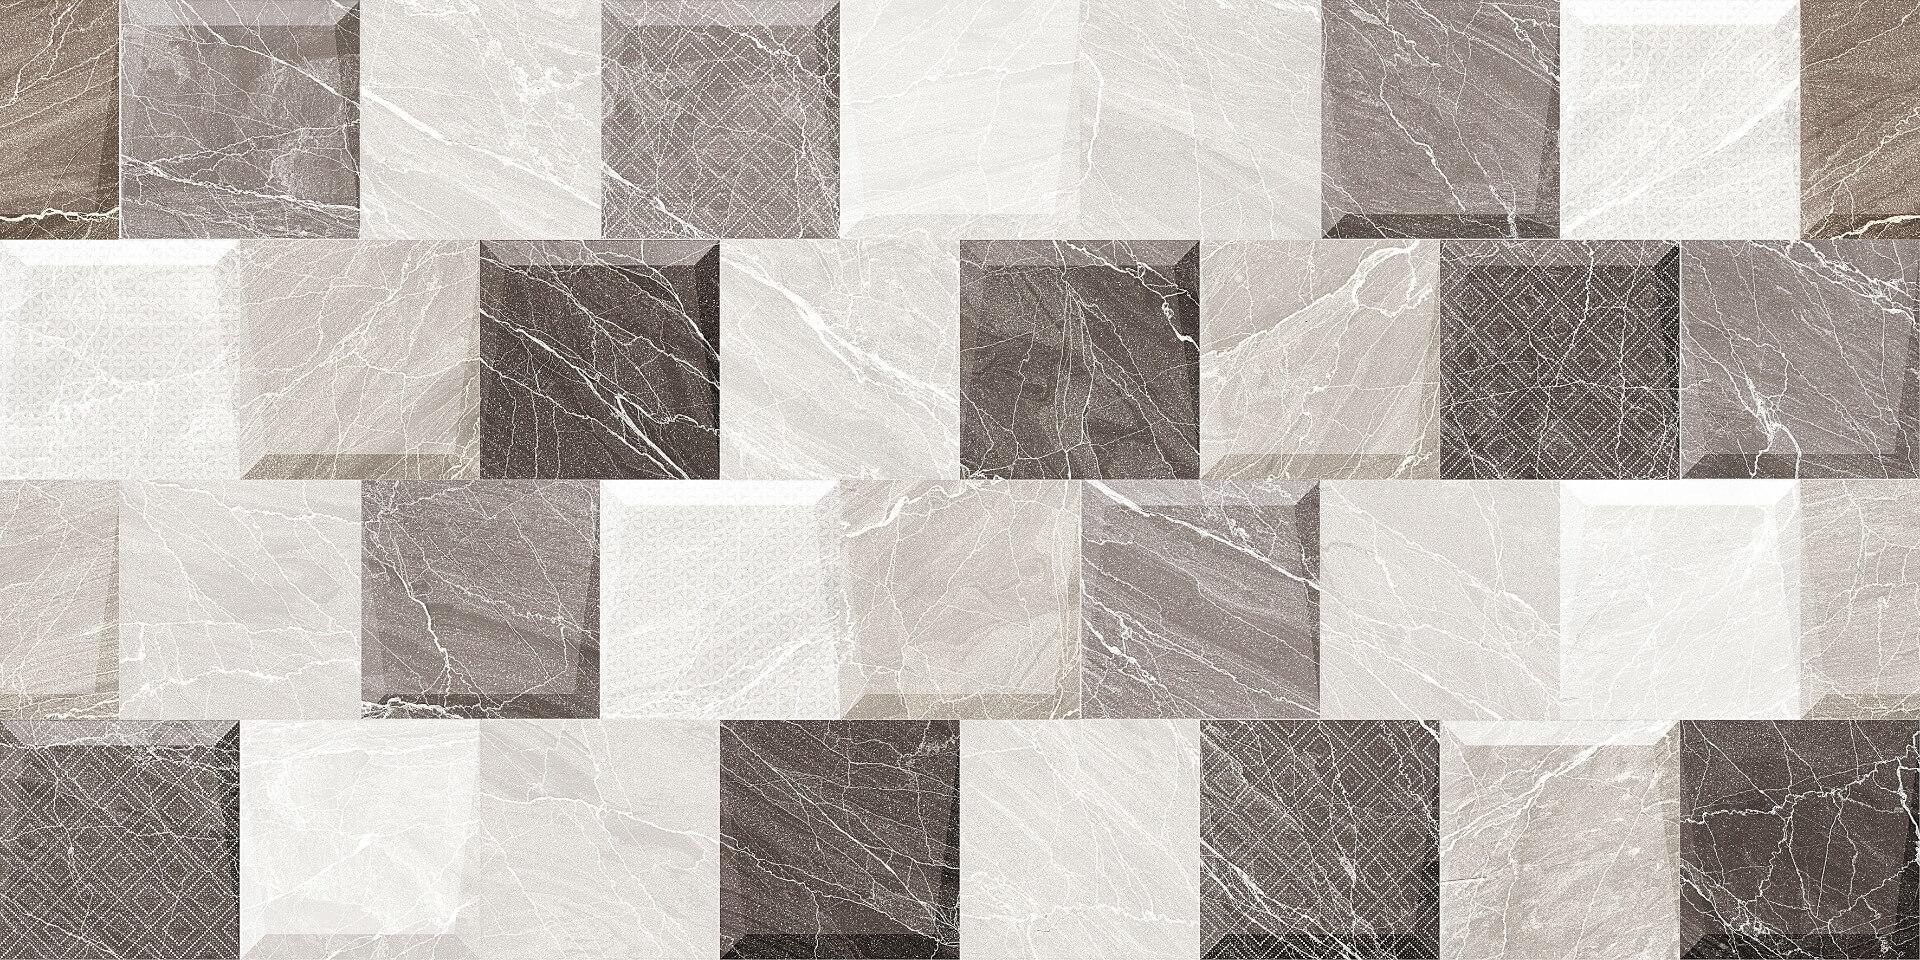 Wall Tiles for Bathroom Tiles, Living Room Tiles, Kitchen Tiles, Accent Tiles, Dining Room Tiles, Bar/Restaurant